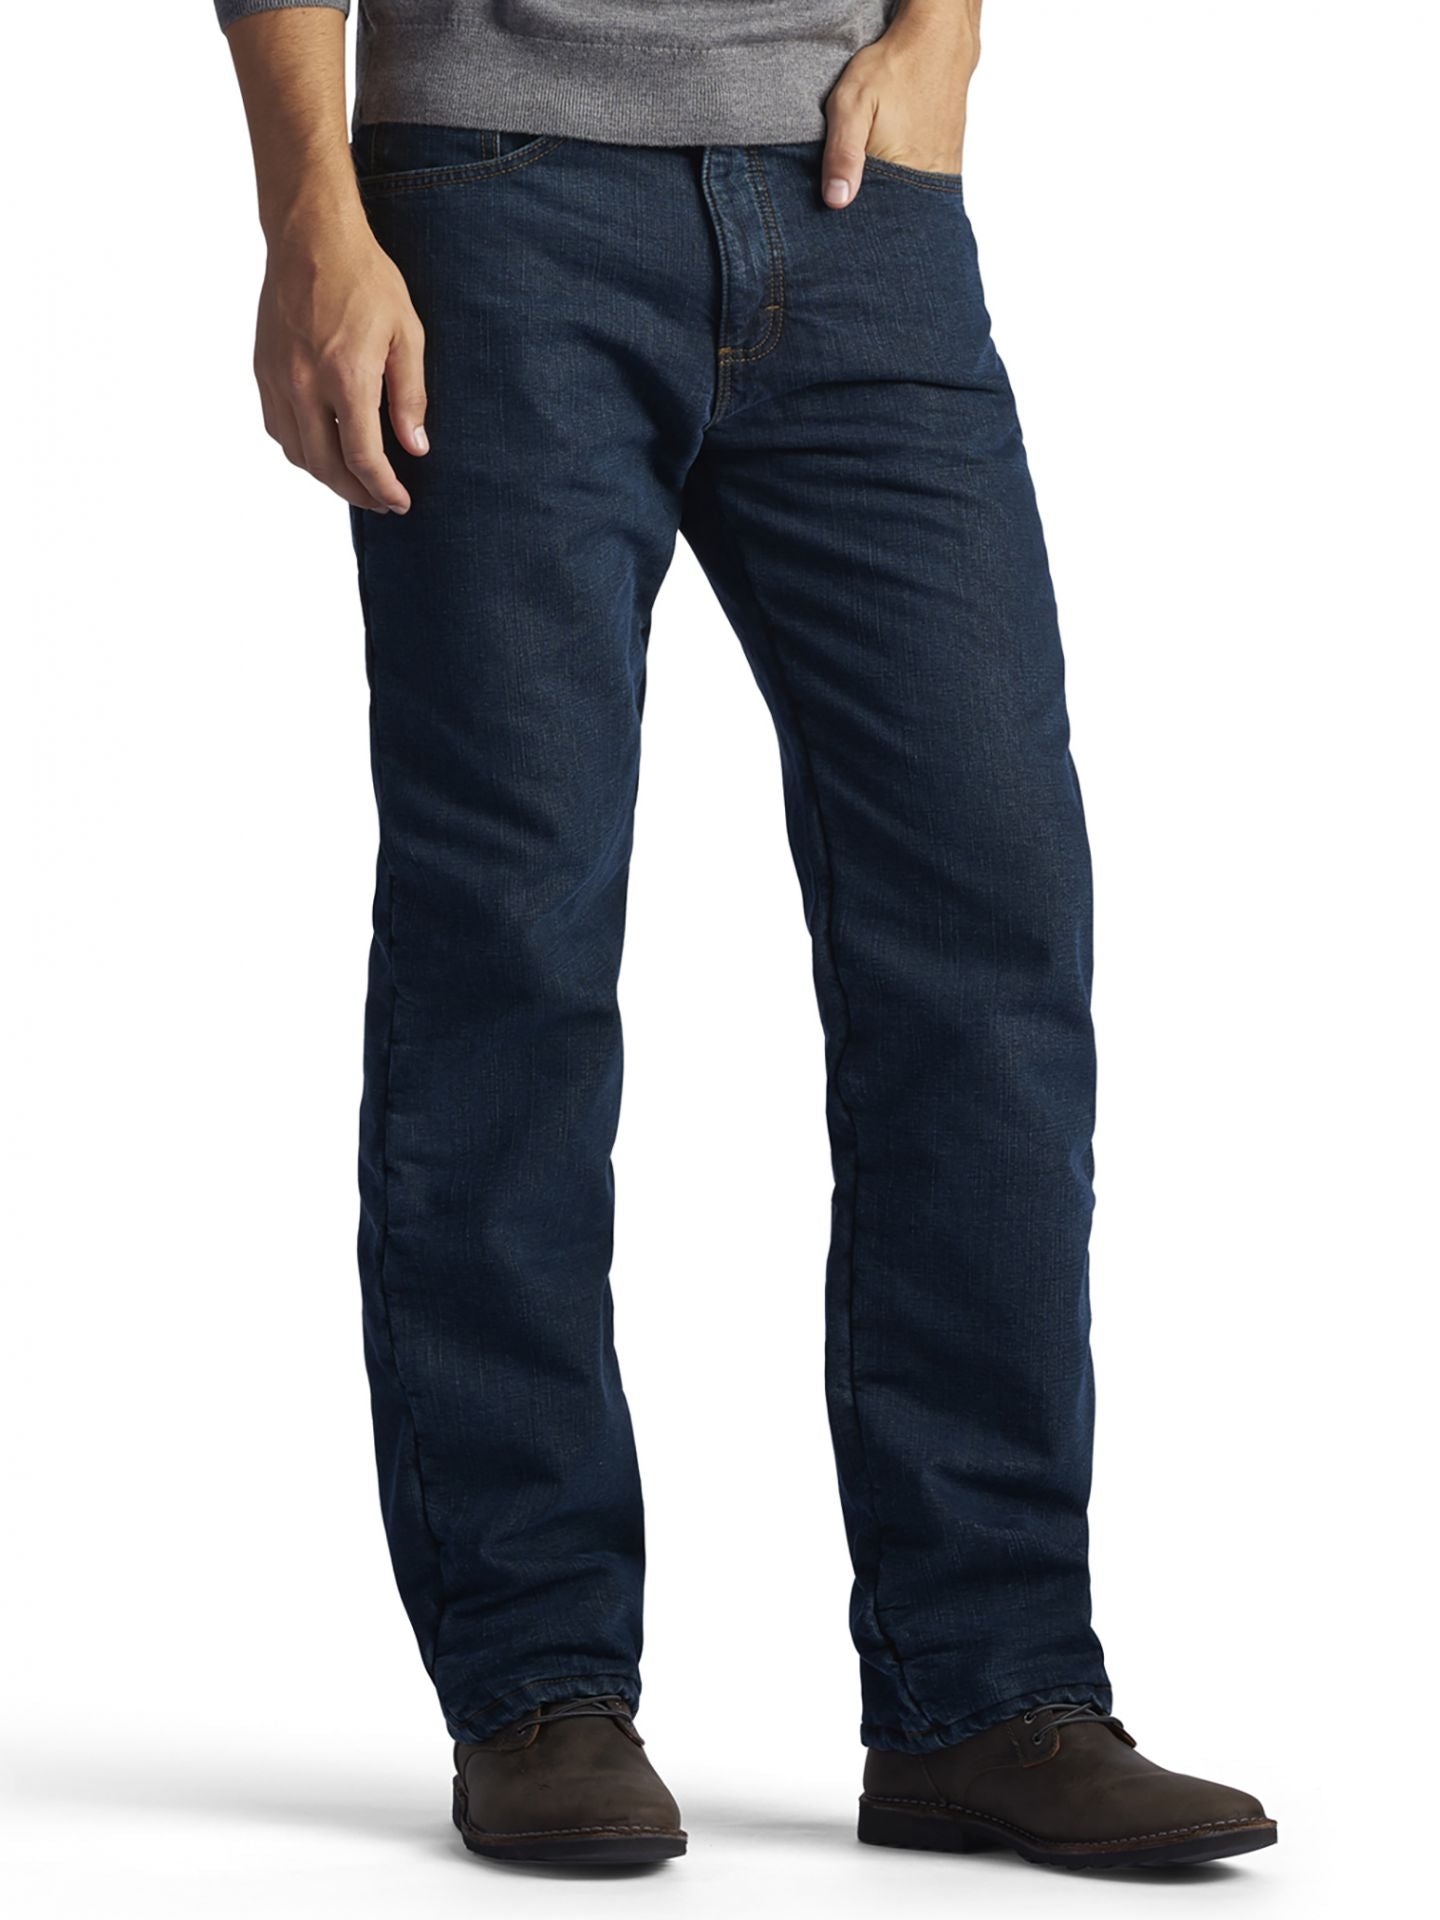 Men's Relaxed Fit Fleece Lined Straight Leg Jeans - Black Quartz